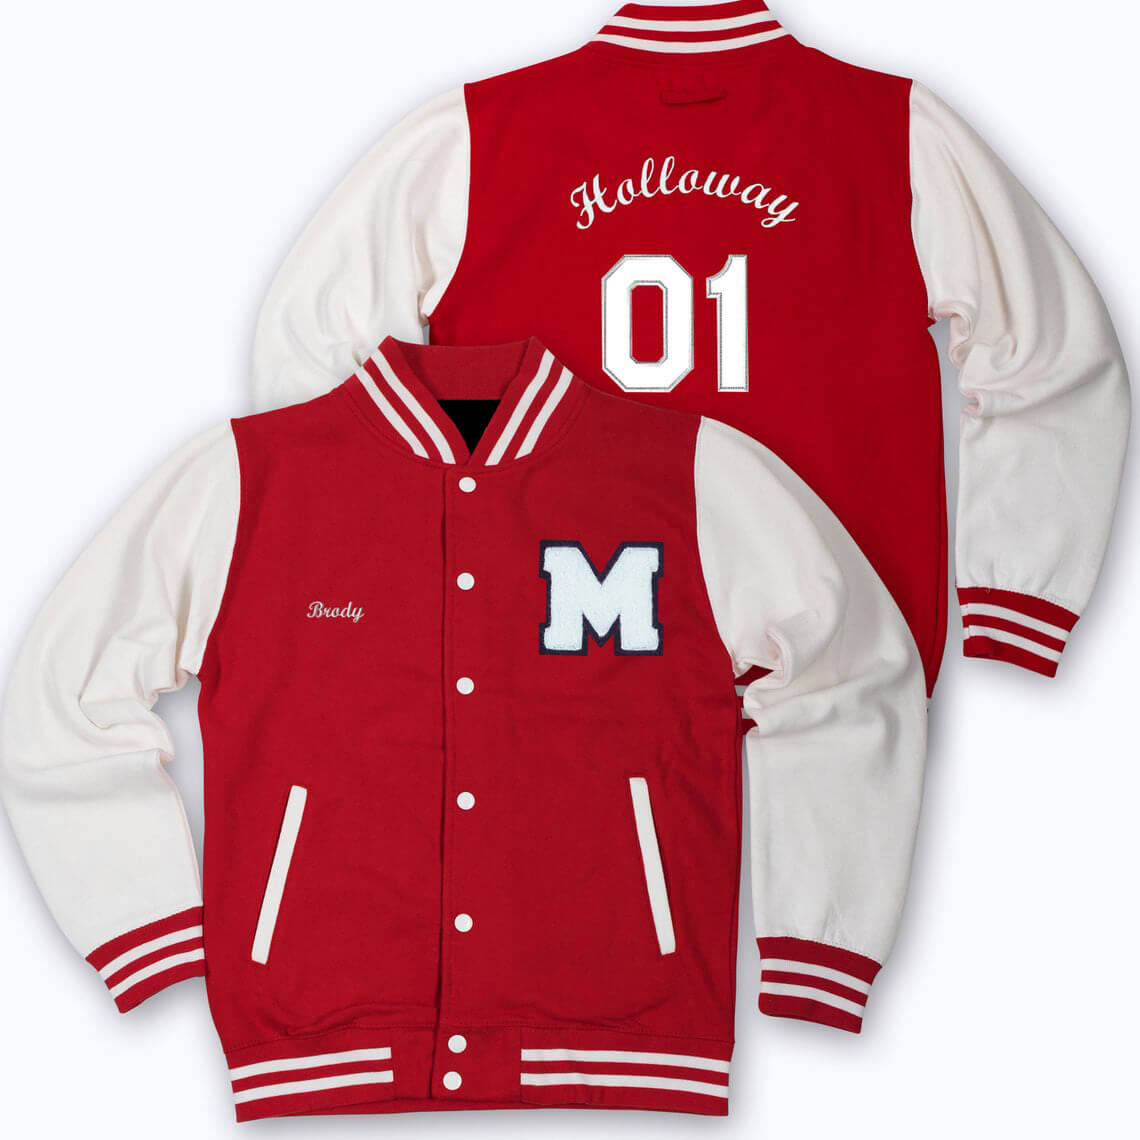 Men's Varsity Jacket in Red & White - Baseball Letterman Look